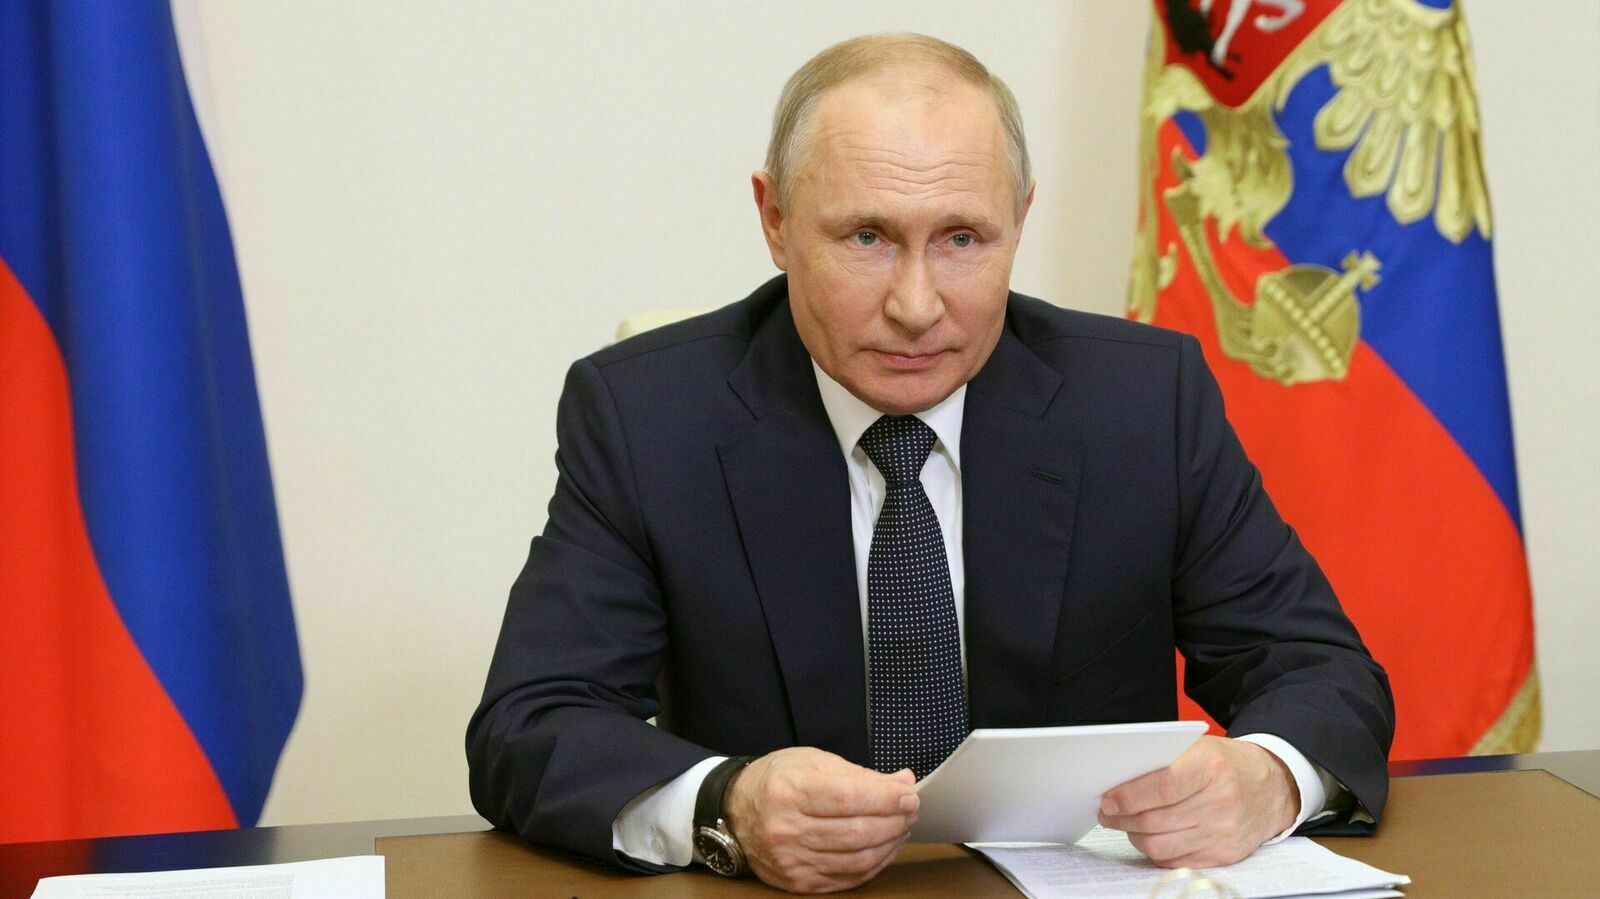 Матвиенко считает, что инаугурация Путина откроет новый цикл суверенного развития России